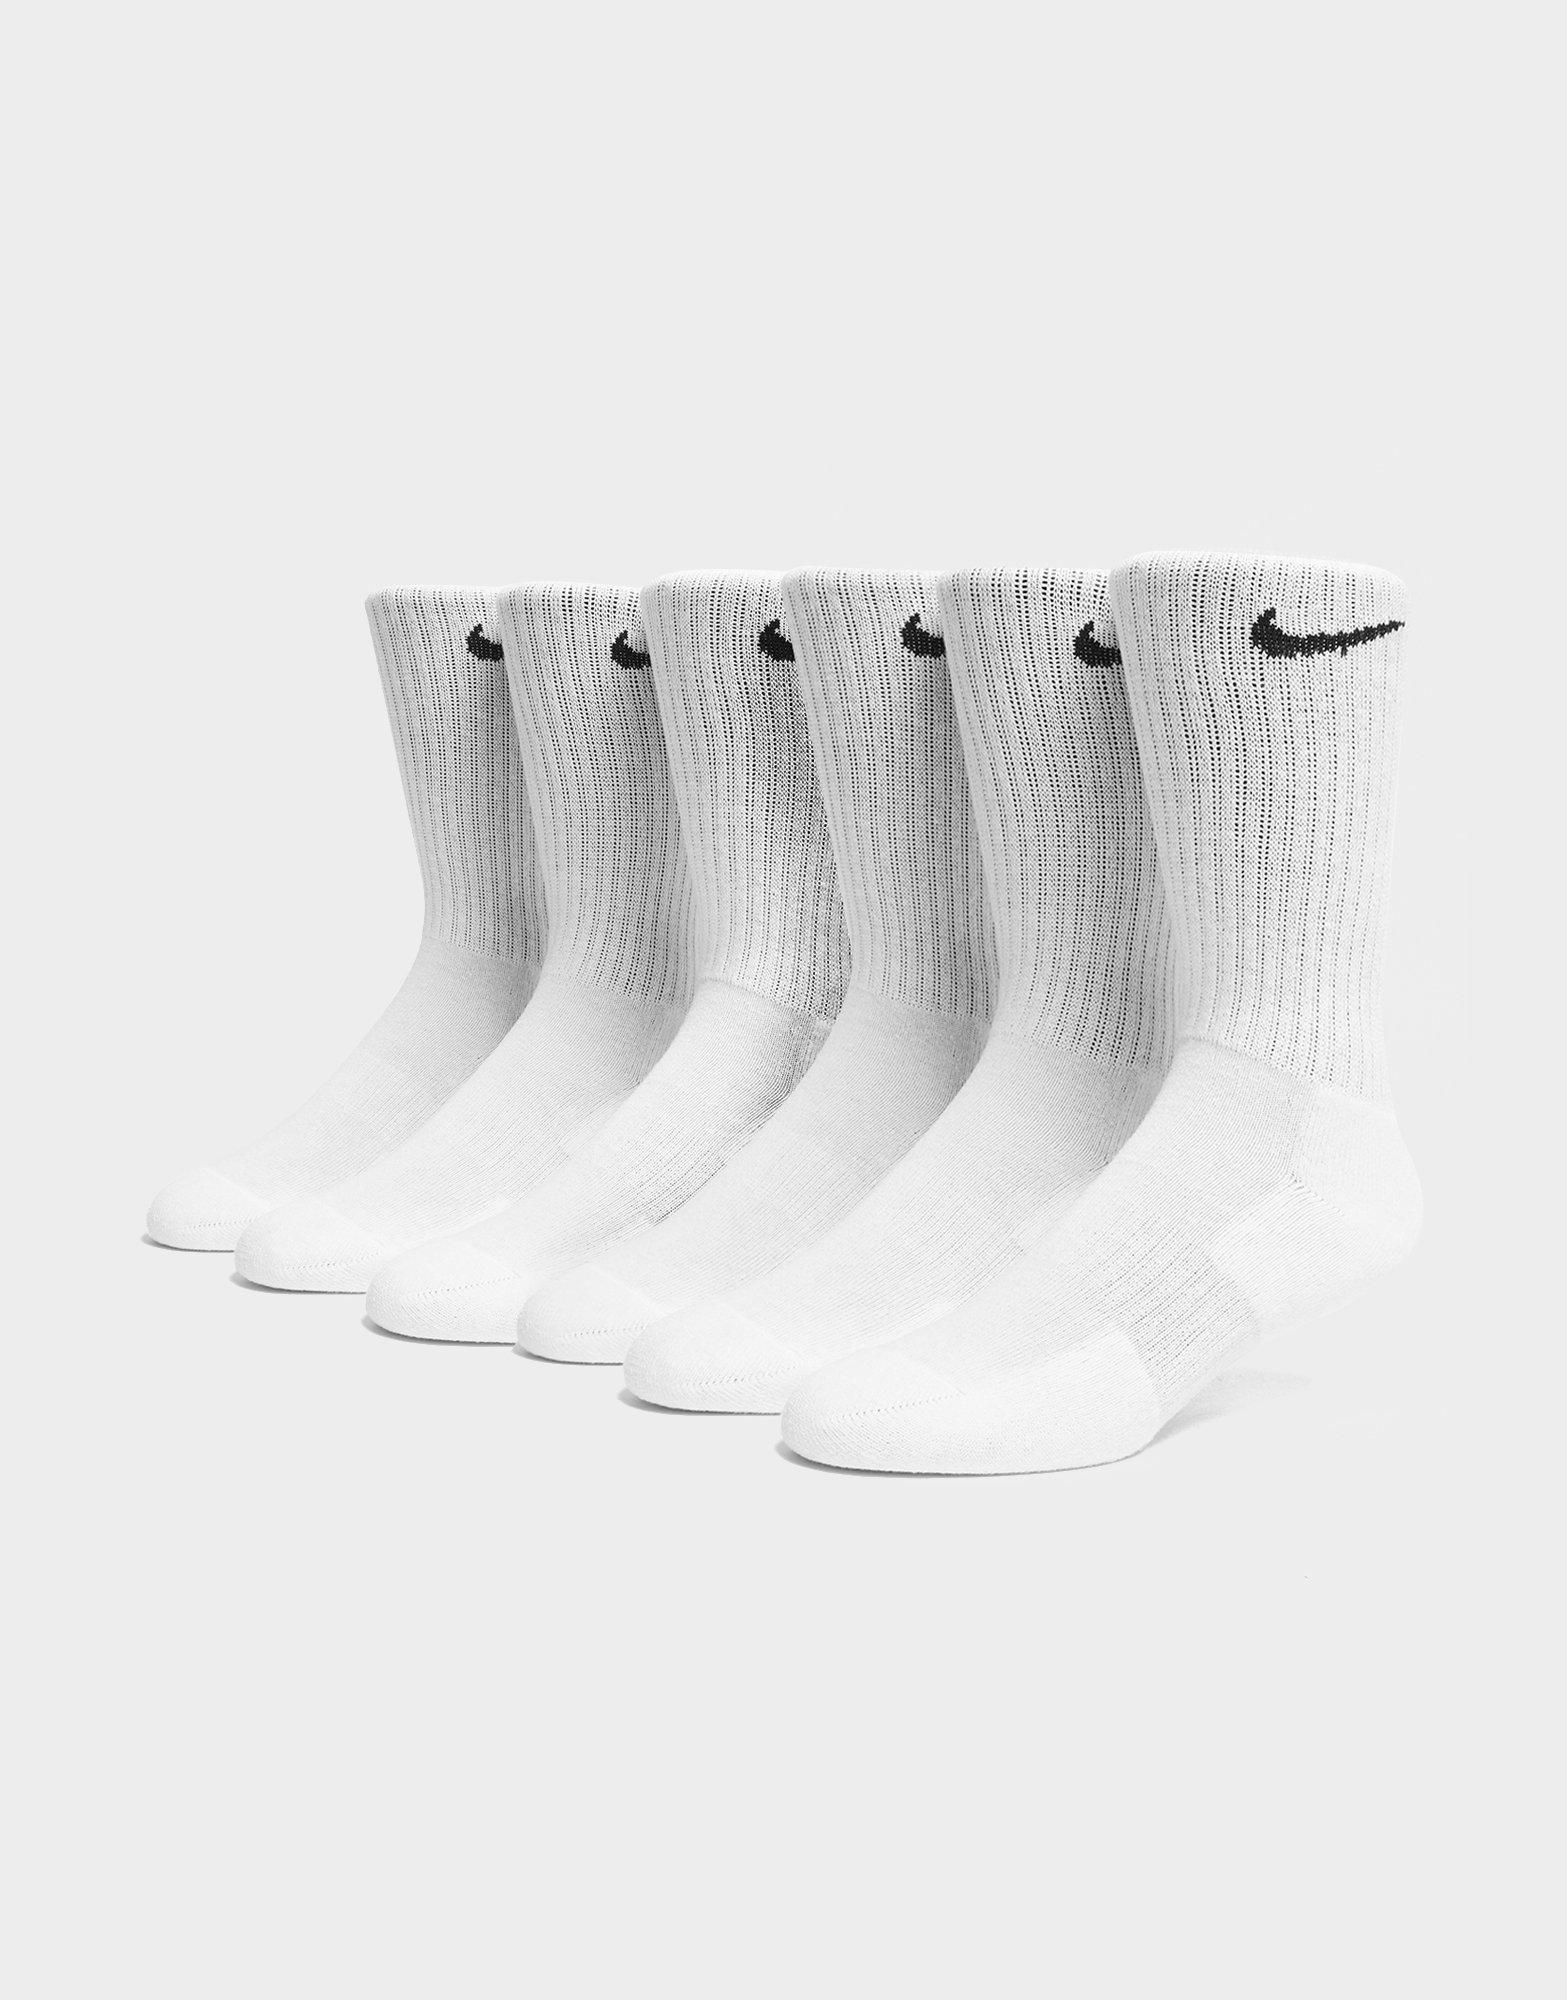 nike socks 6 pack